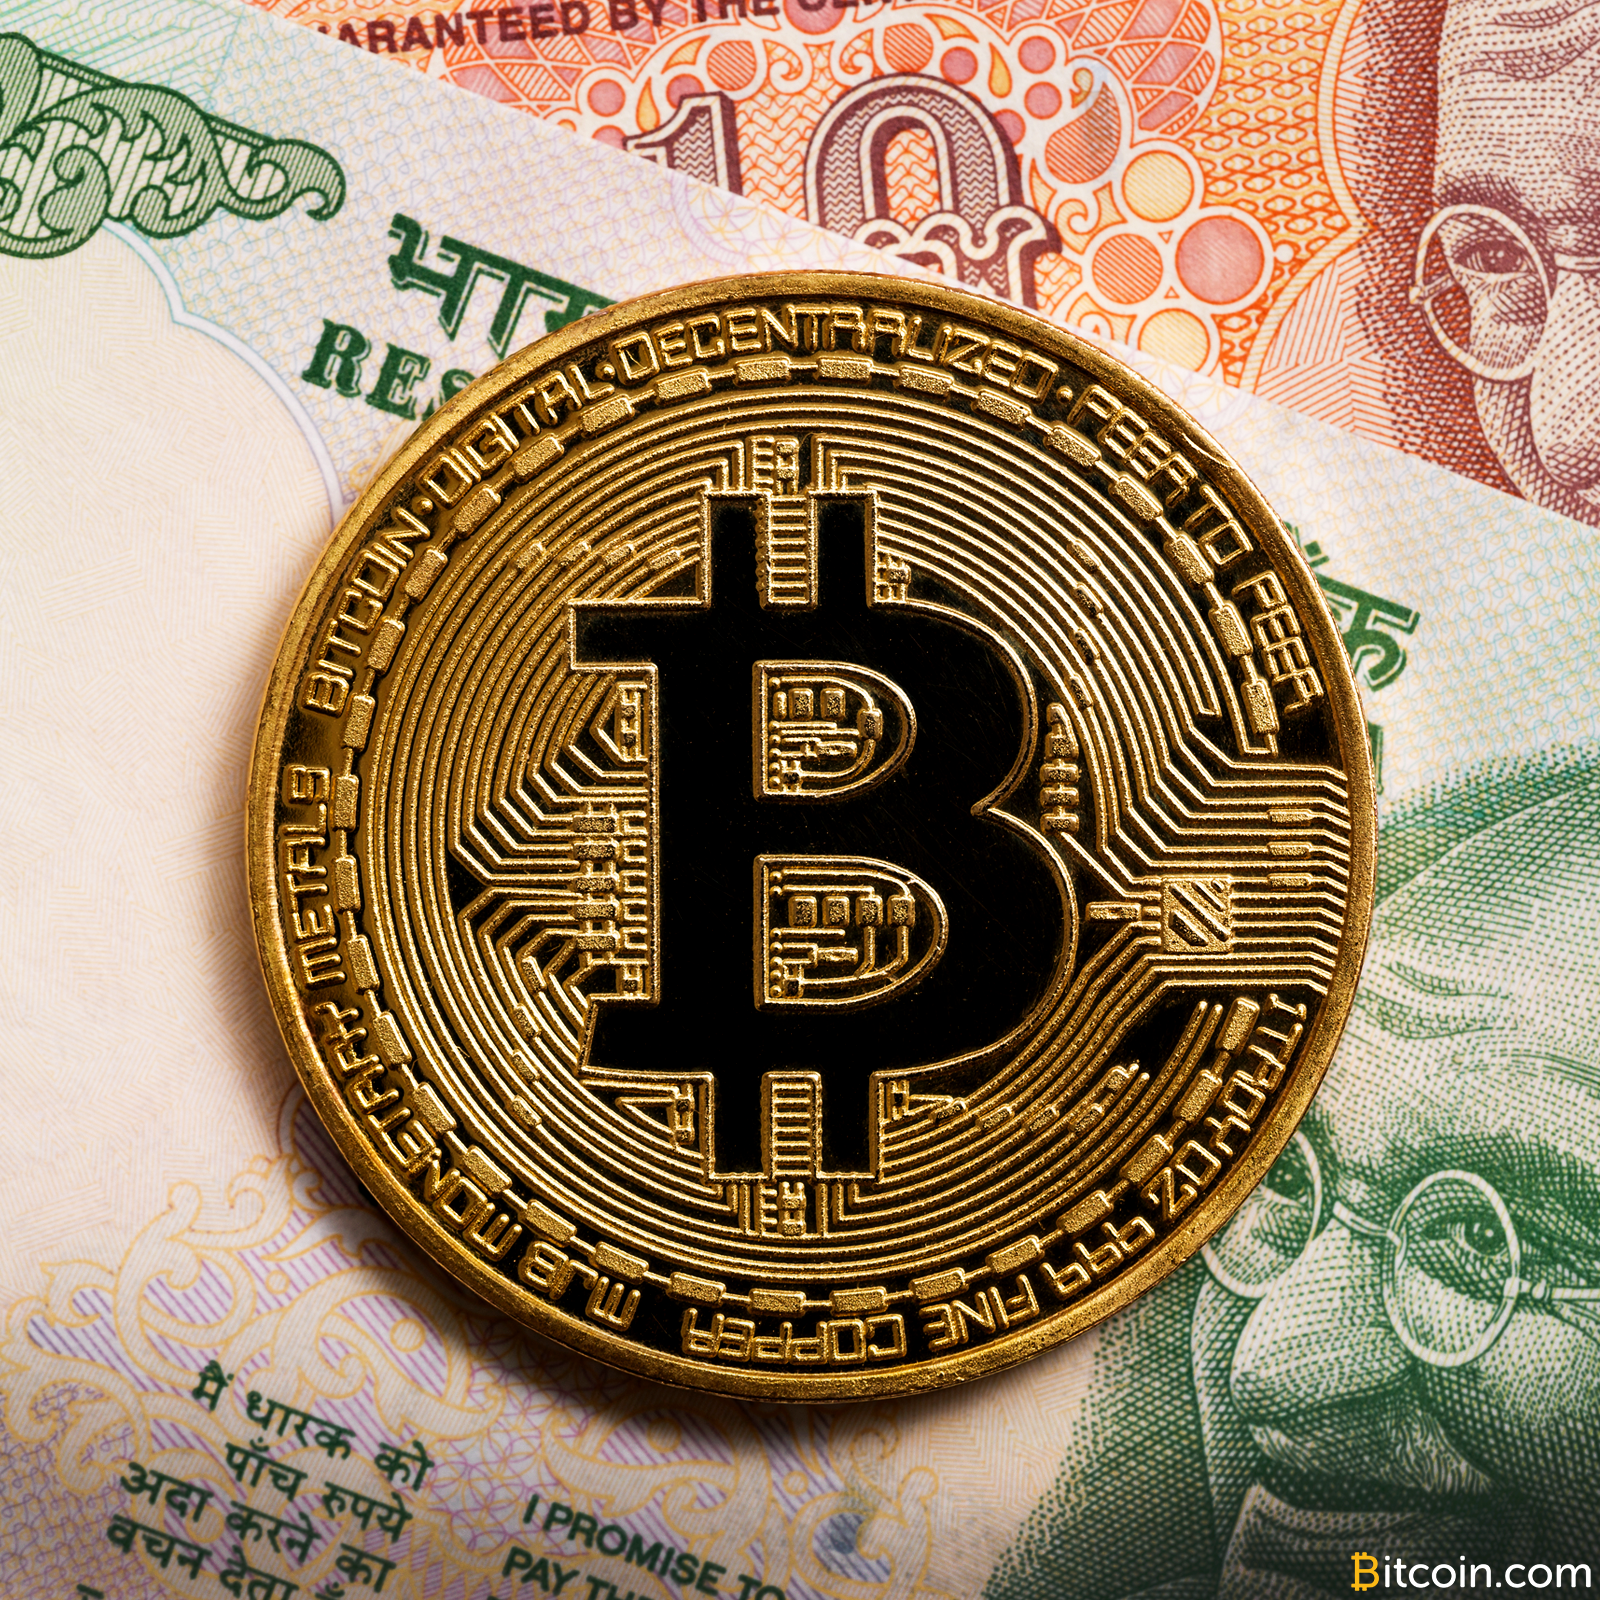 Parduoti bitkoinų gali ir nebepavykti – pradėjo blokuoti lietuvių sąskaitas Bitcoin draudžiama